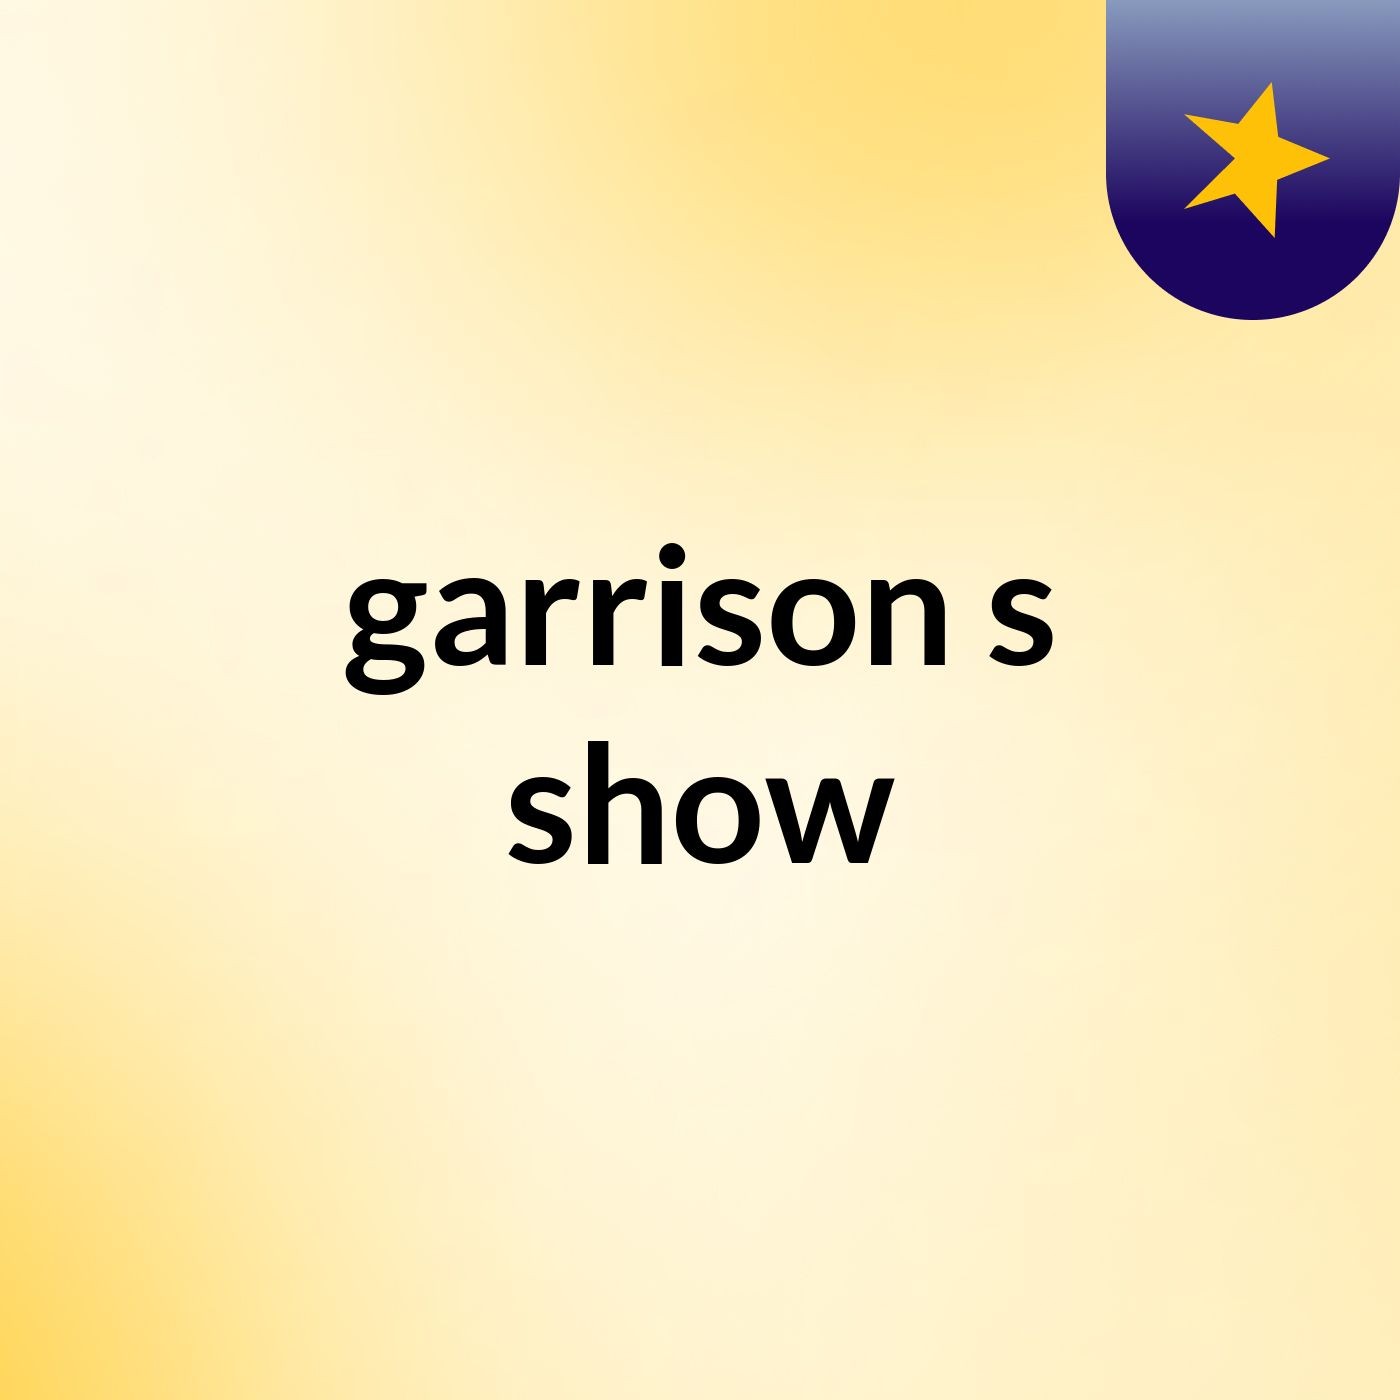 garrison's show